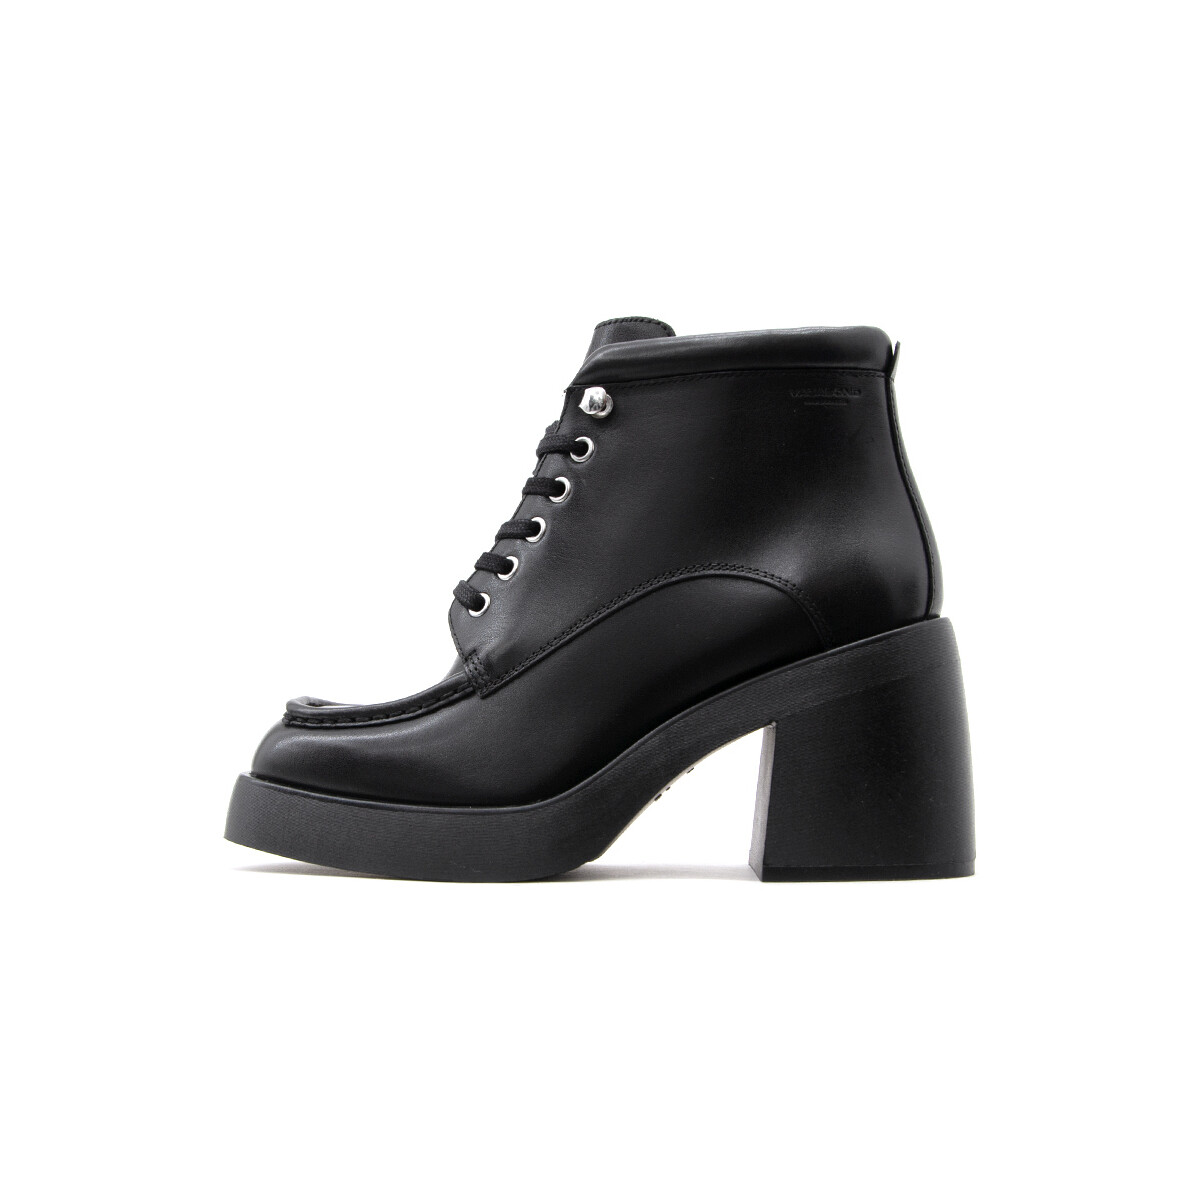 Μποτάκια/Low boots Vagabond Shoemakers BROOKE LEATHER HIGH HEEL ANKLE BOOTS WOMEN